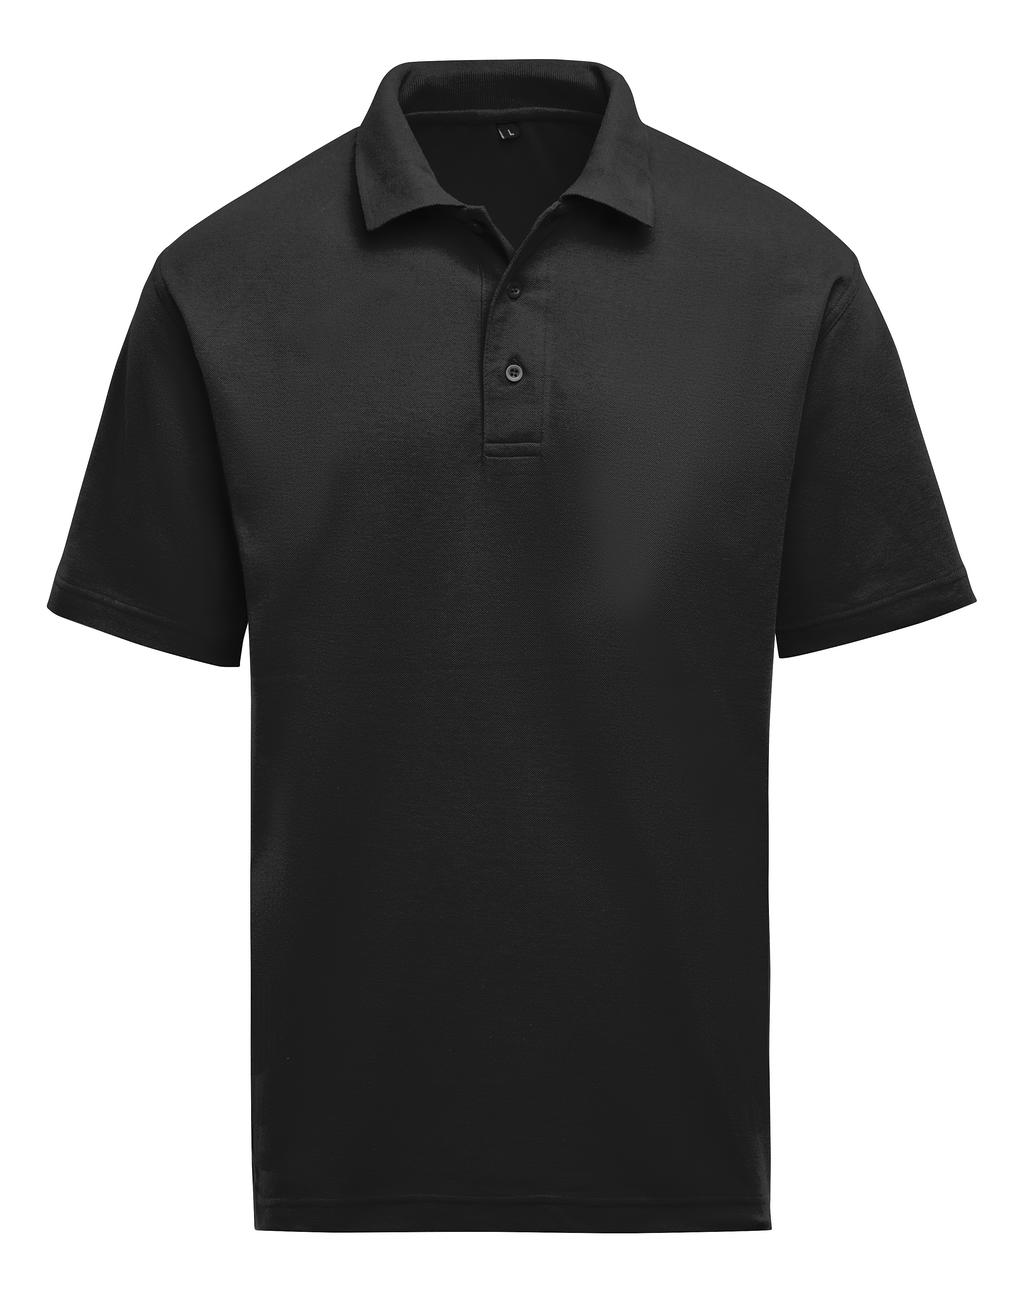  Unisex Polo in Farbe Black